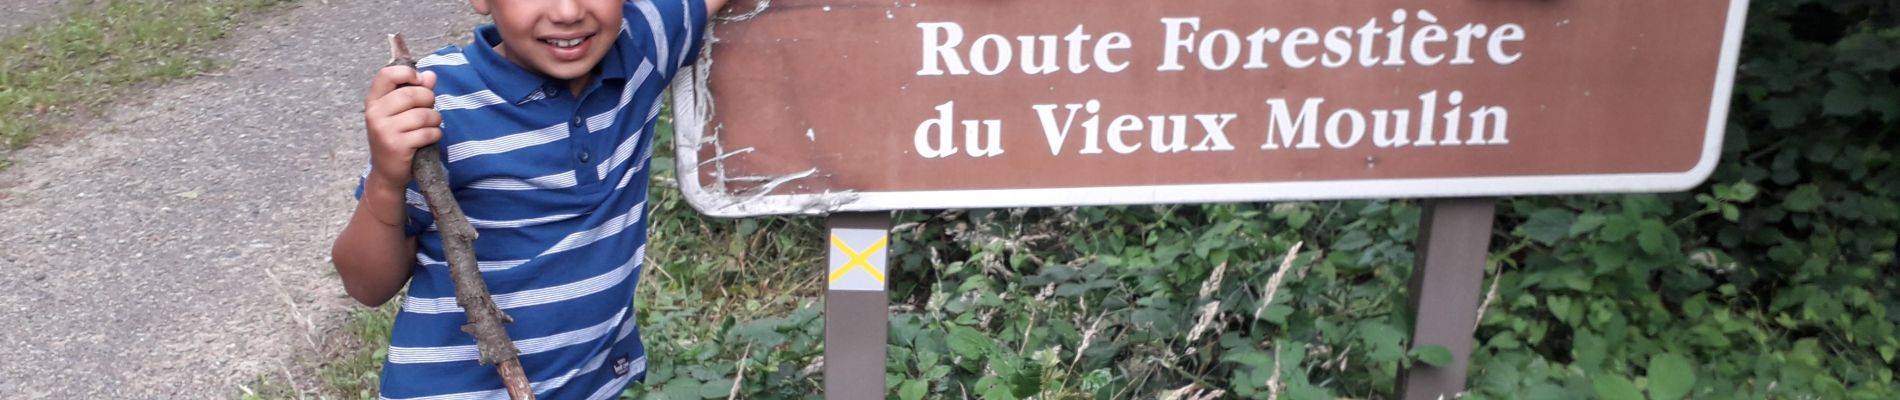 Trail Walking Bagnoles-de-l'Orne-Normandie - Route forestière du vieux moulin  - Photo